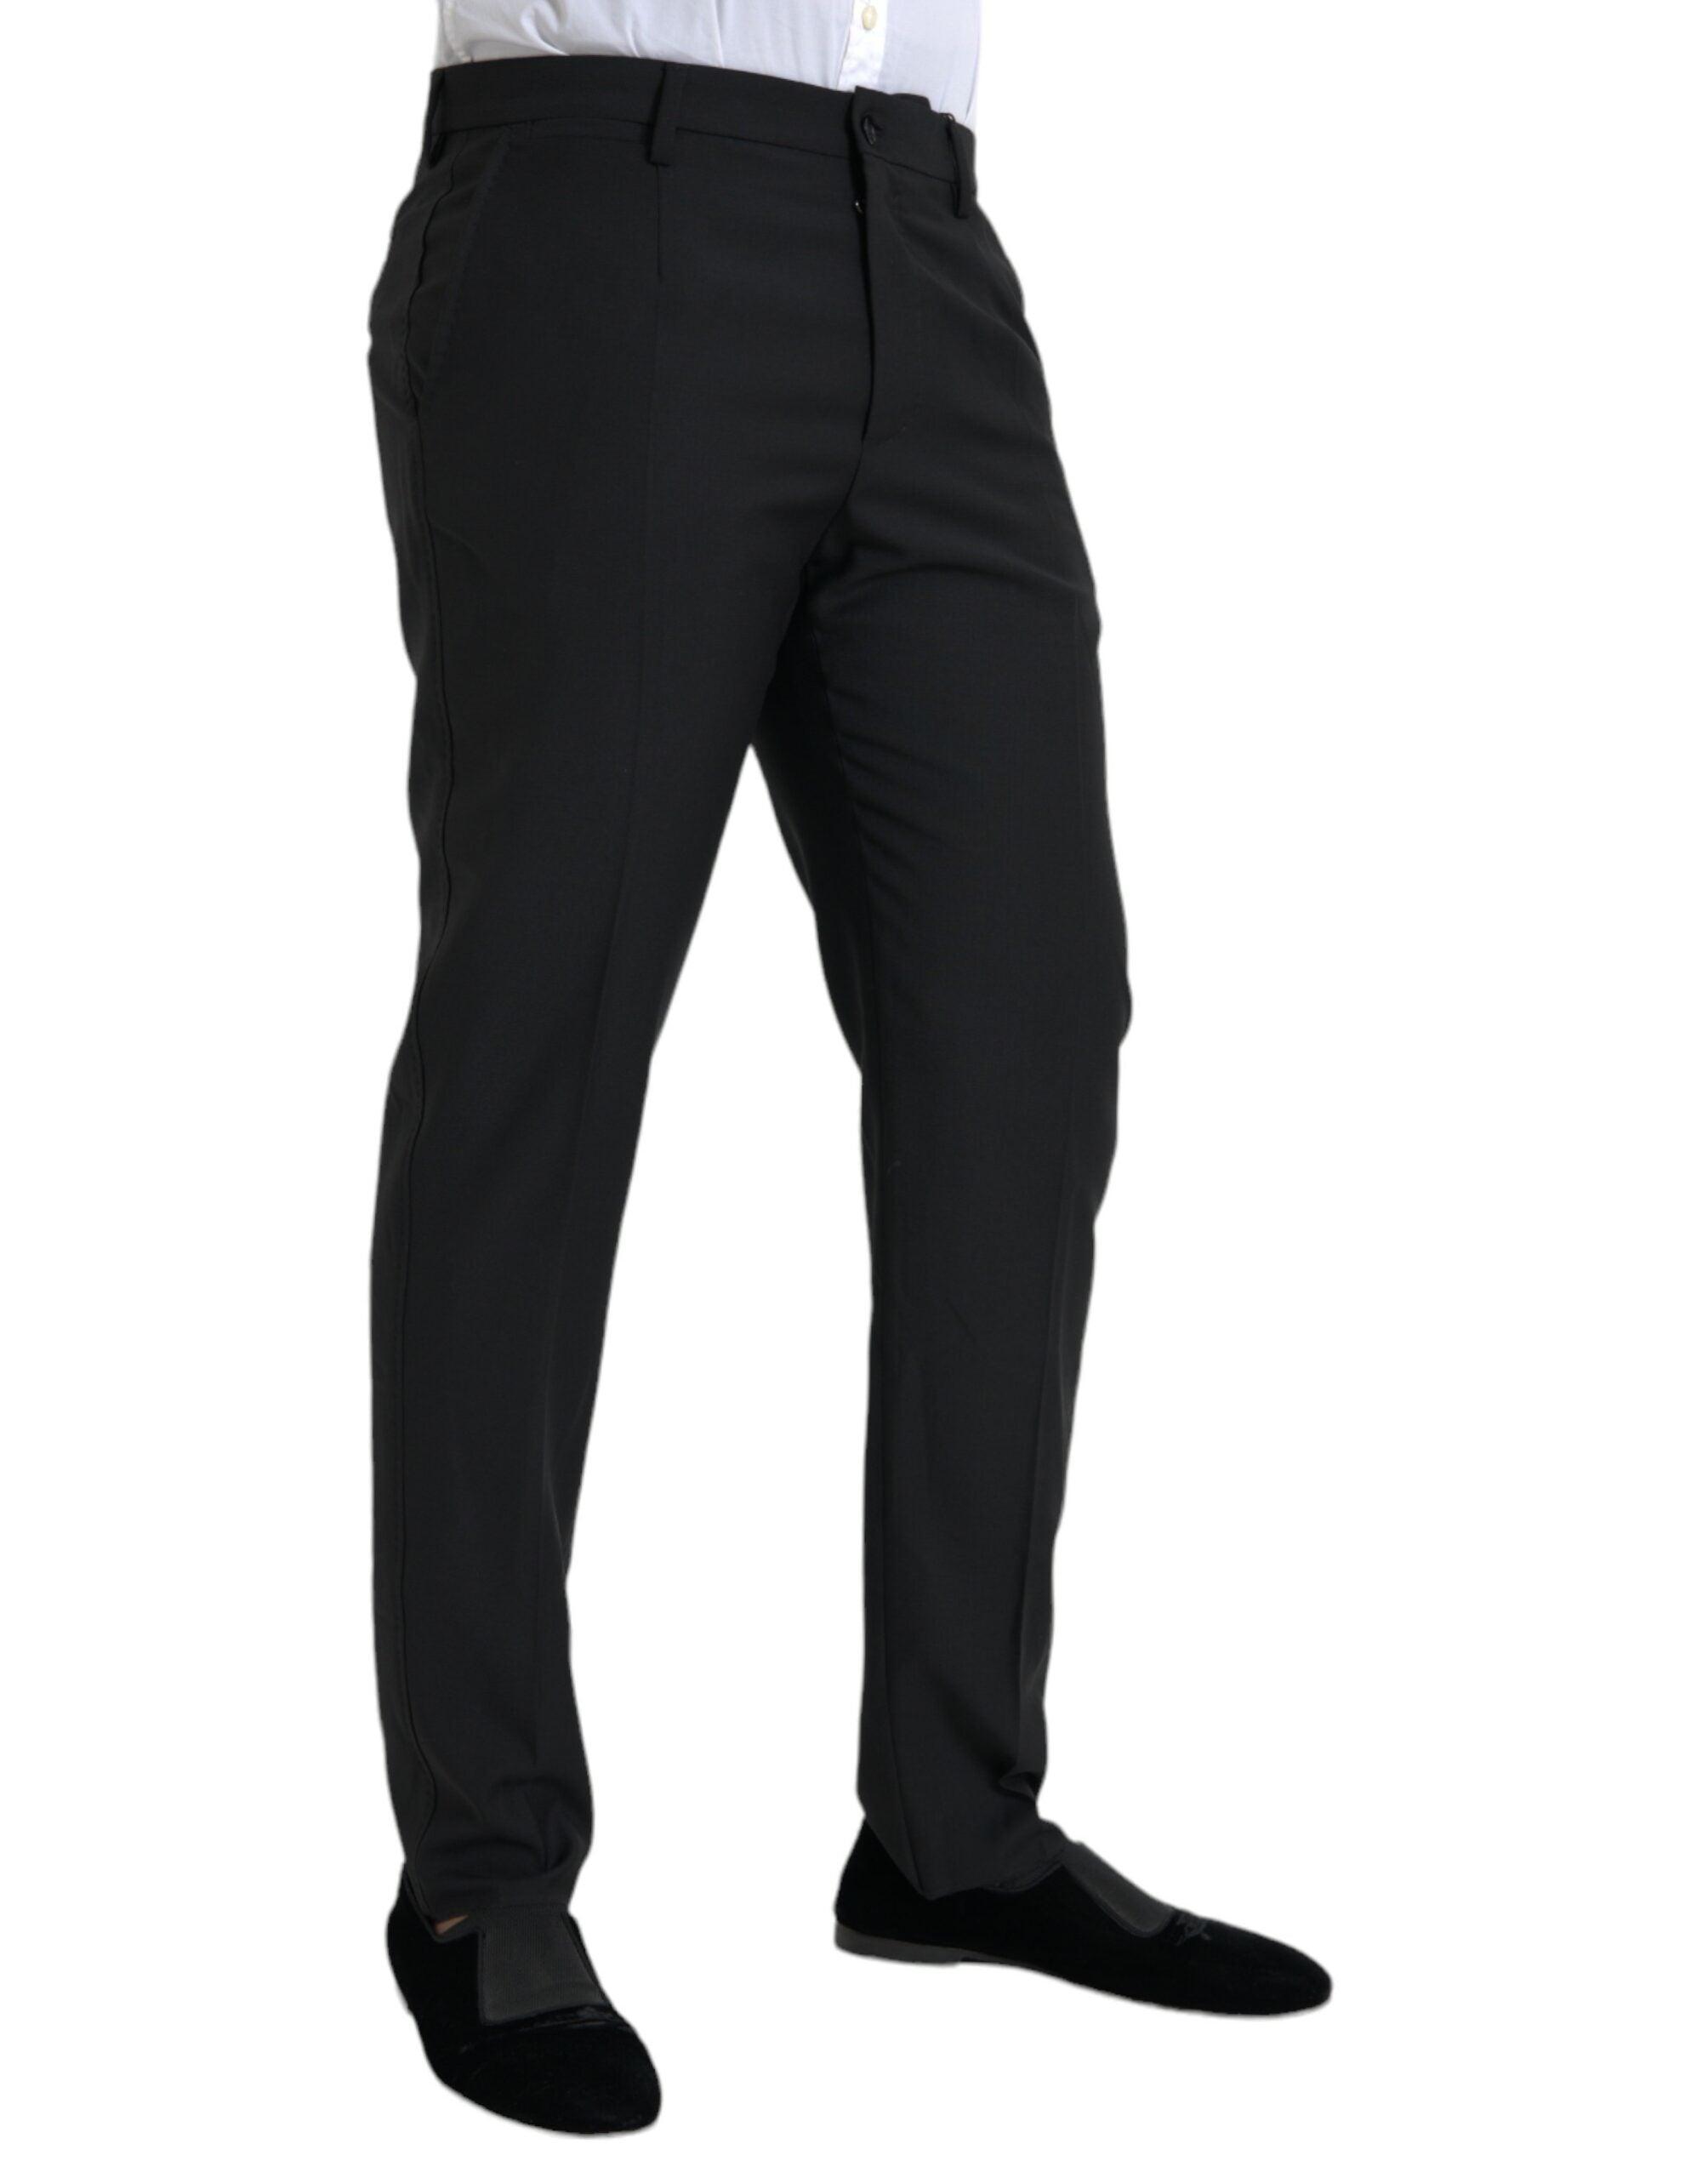 Black Wool Men Skinny Dress Pants - Divitiae Glamour